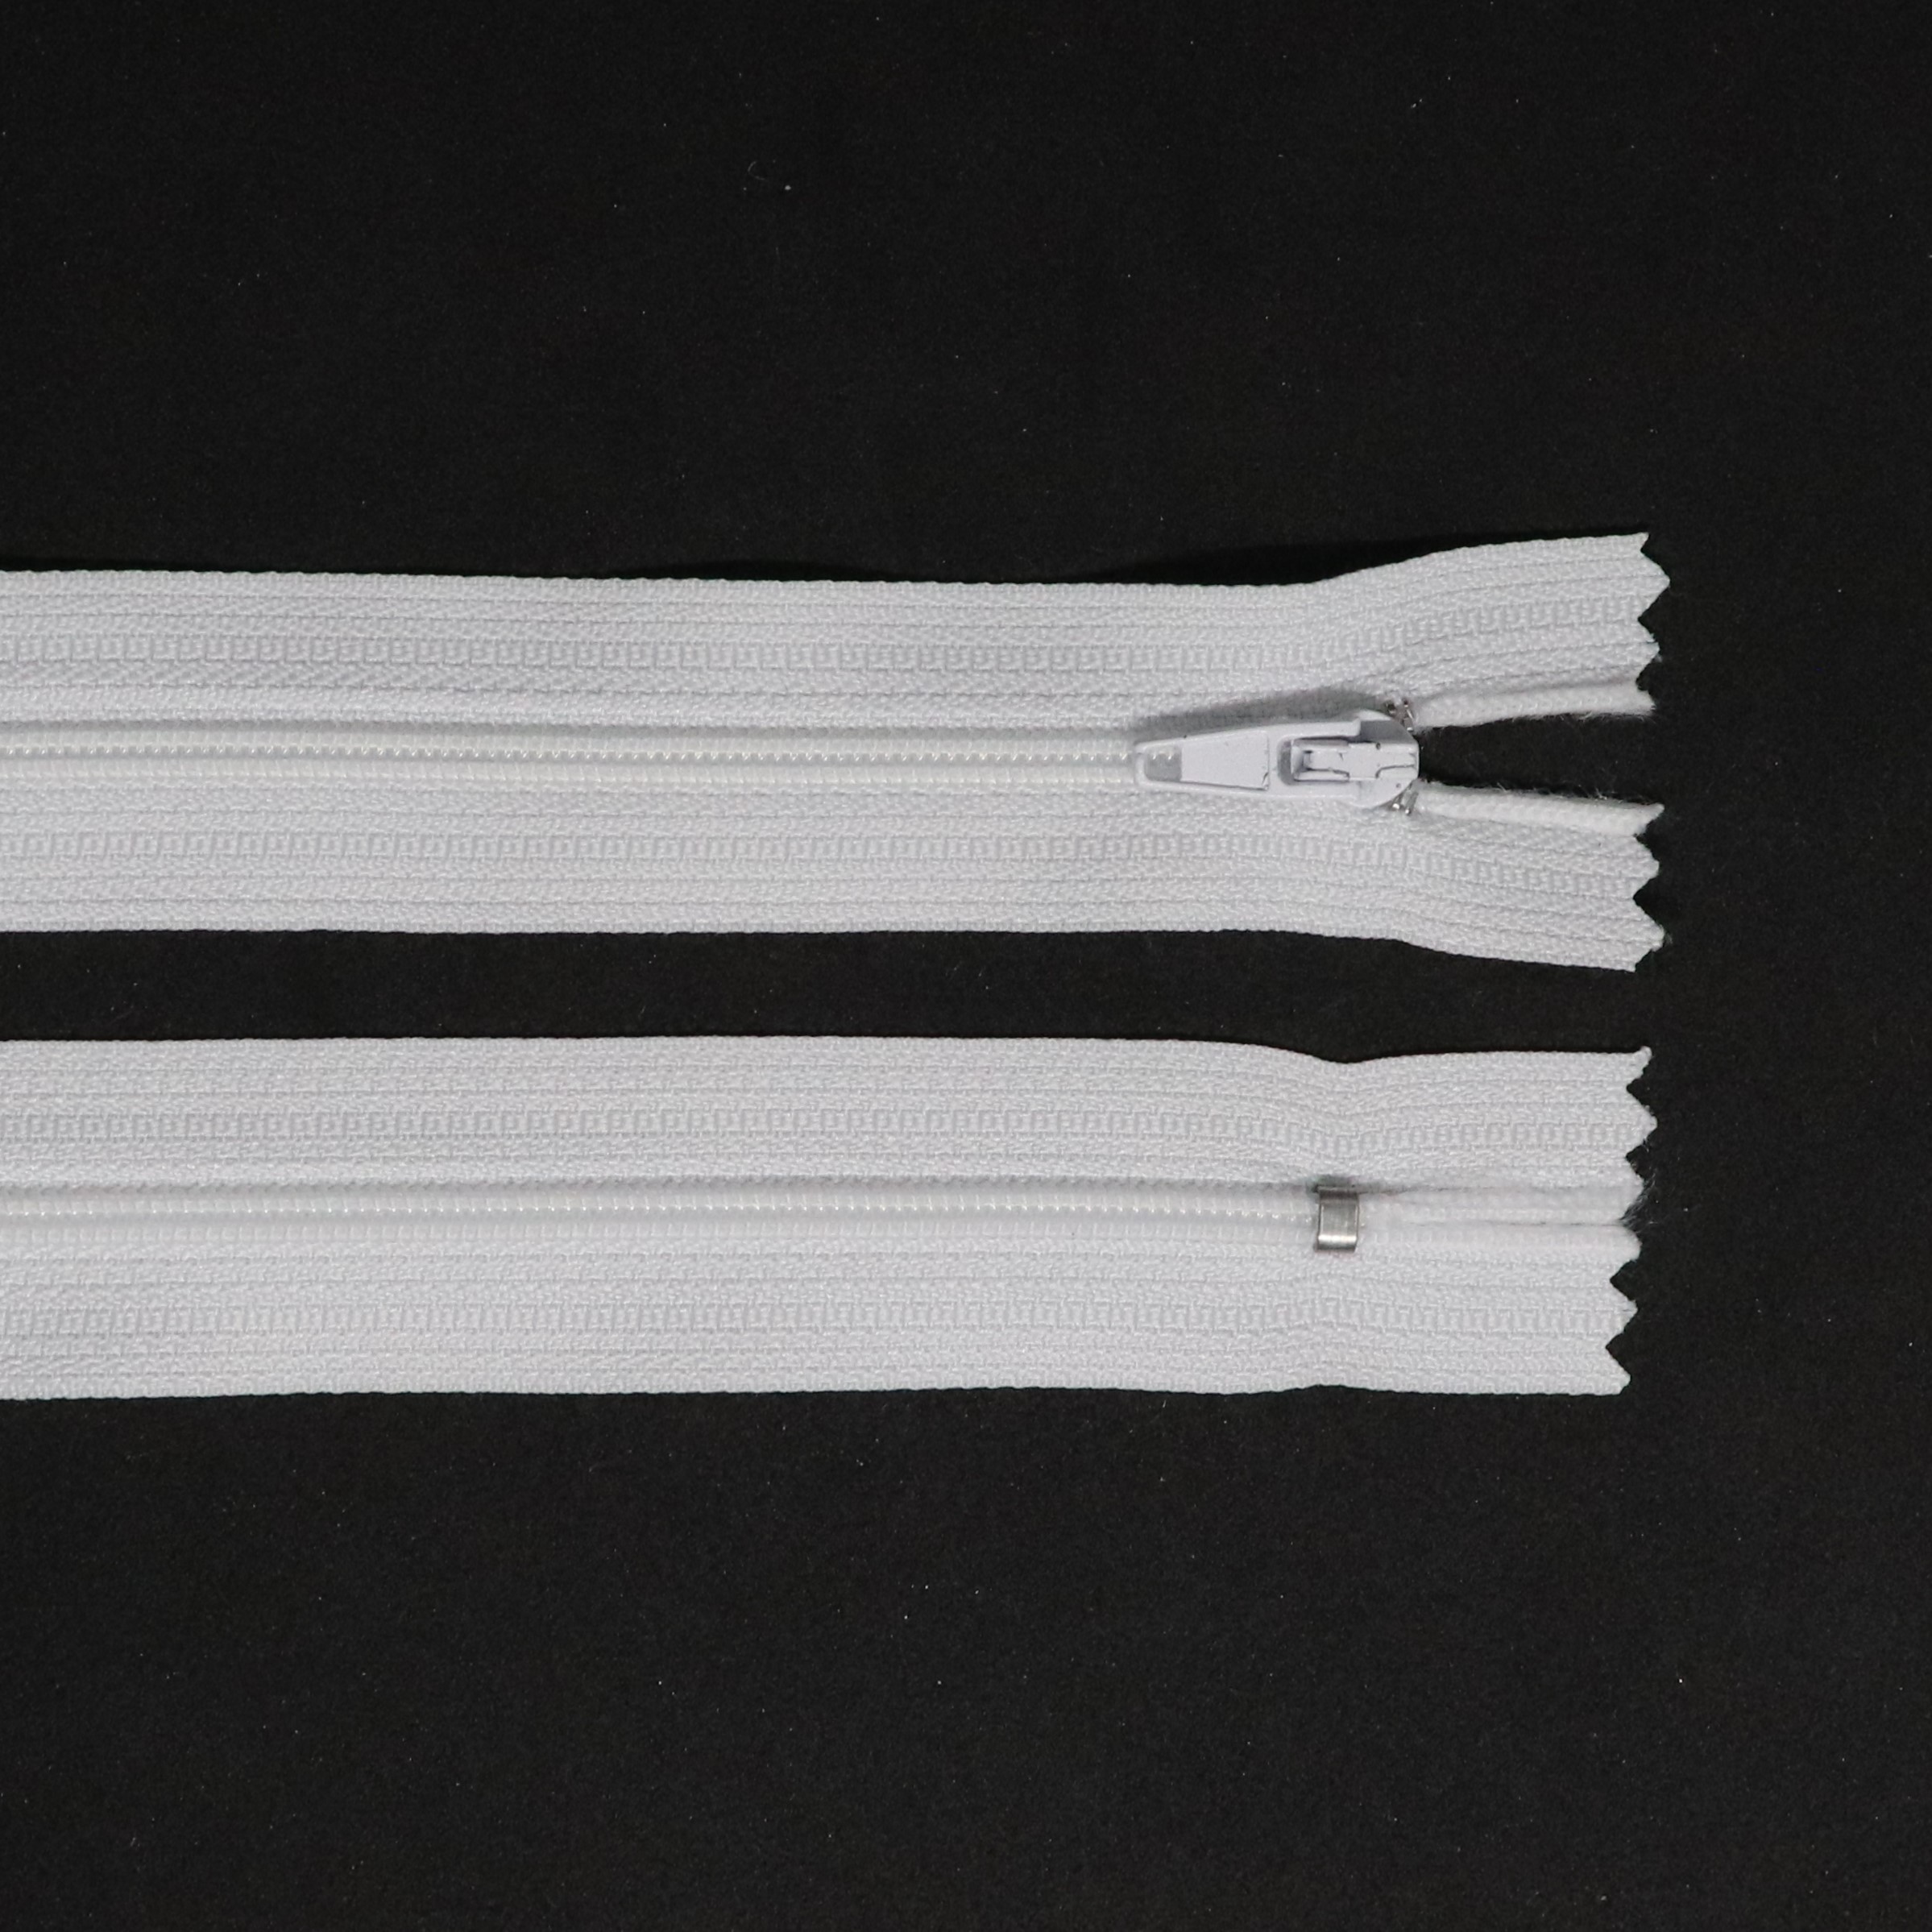 Spirálový zip, šíøe 3 mm, délka 14 cm, bílá - zvìtšit obrázek